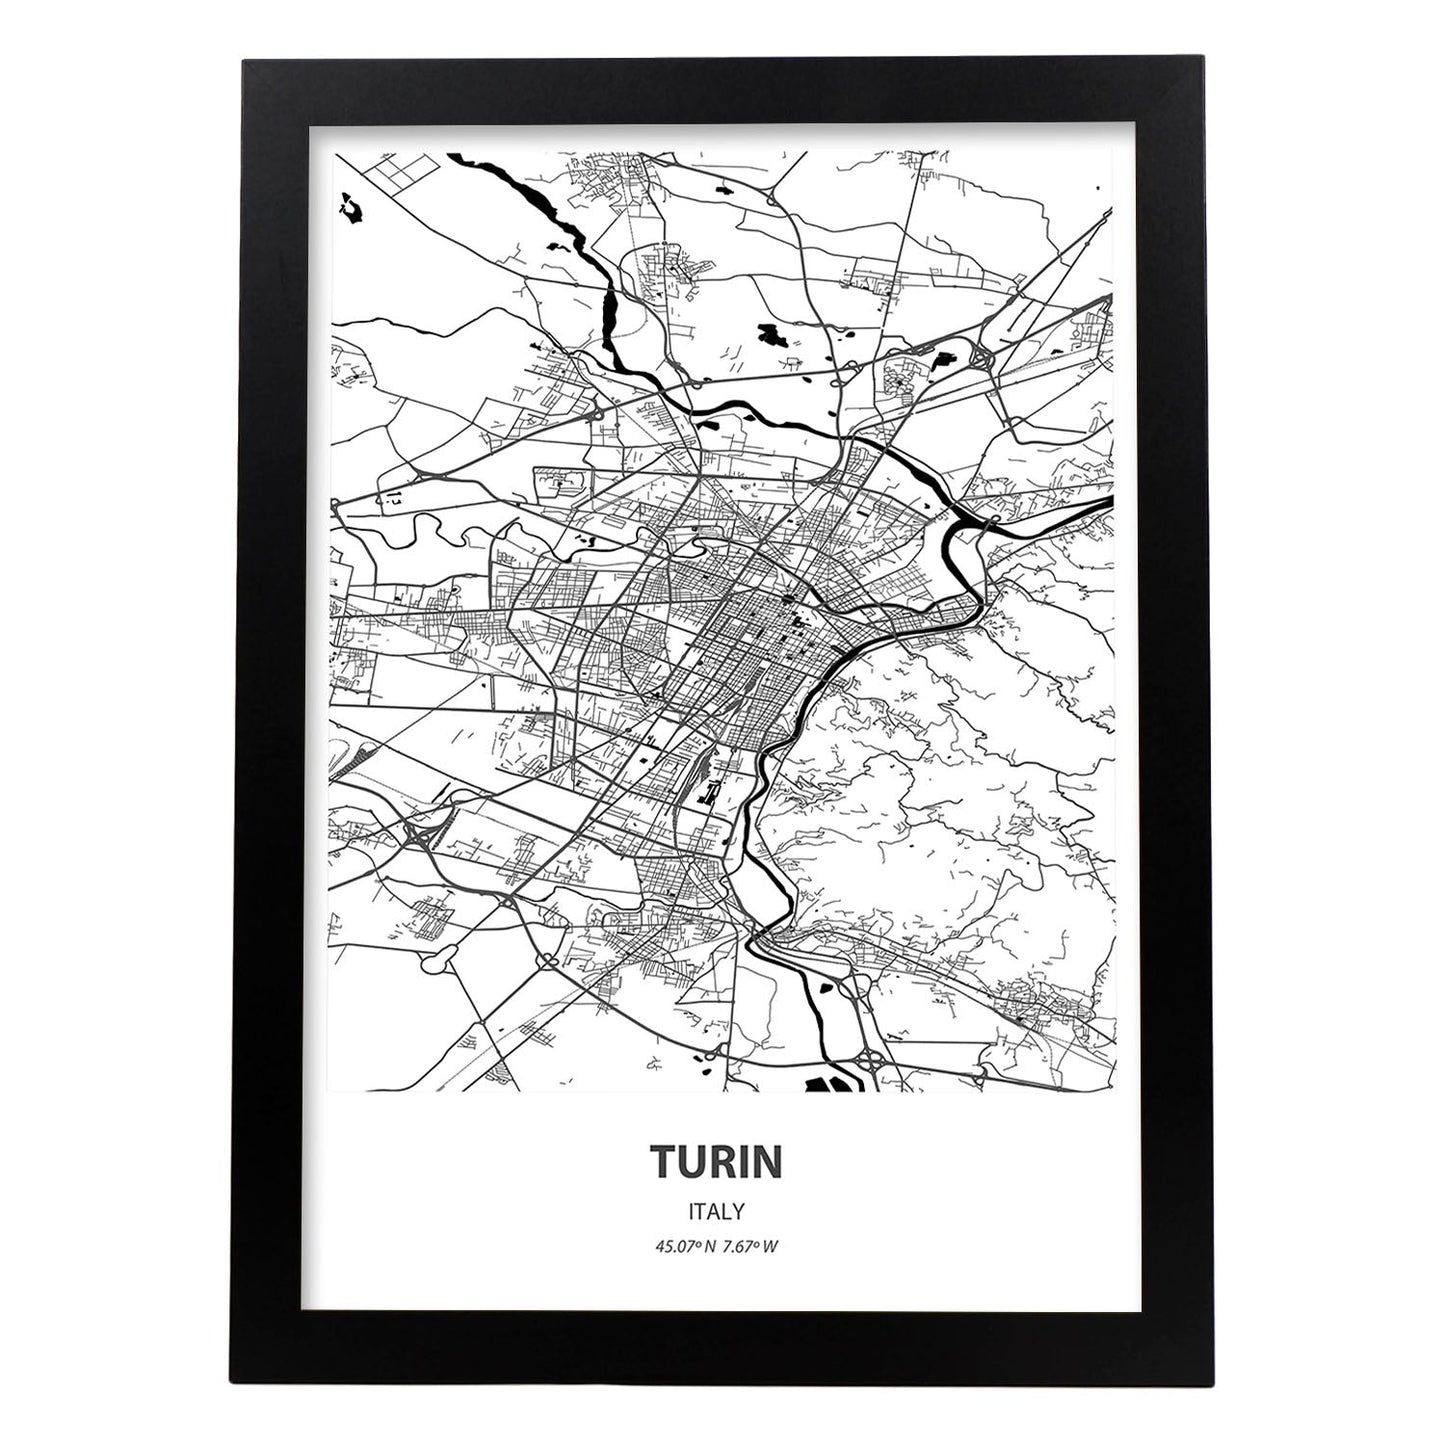 Poster con mapa de Turin - Italia. Láminas de ciudades de Italia con mares y ríos en color negro.-Artwork-Nacnic-A3-Marco Negro-Nacnic Estudio SL